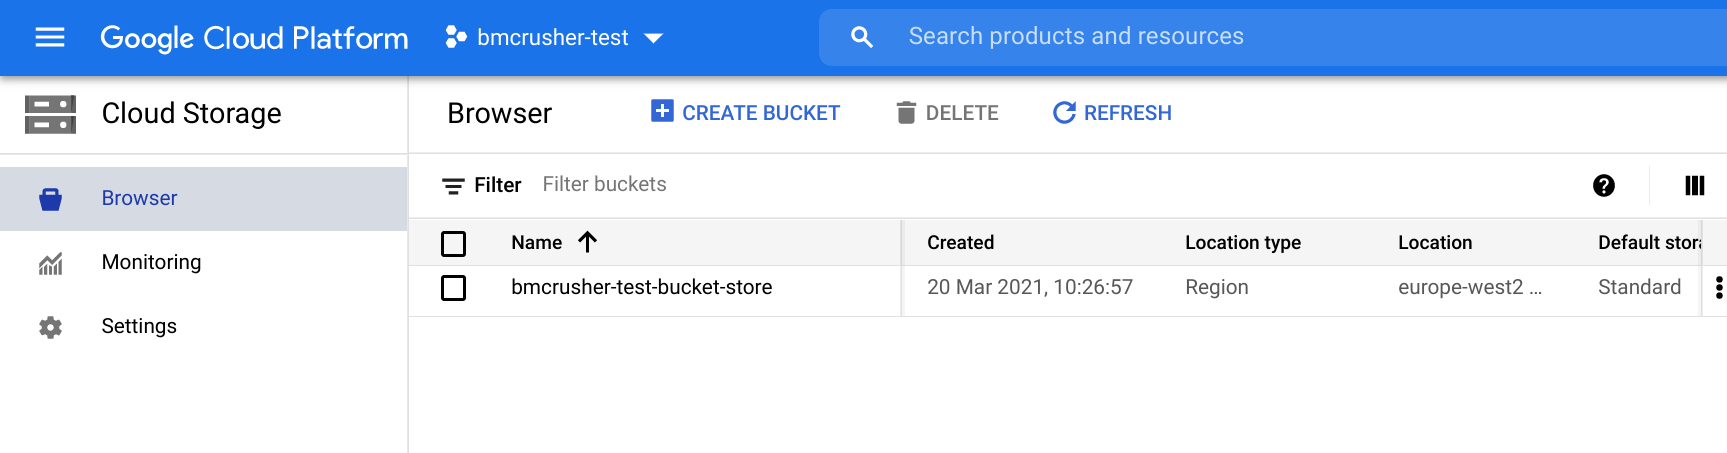 clud storage bucket creation